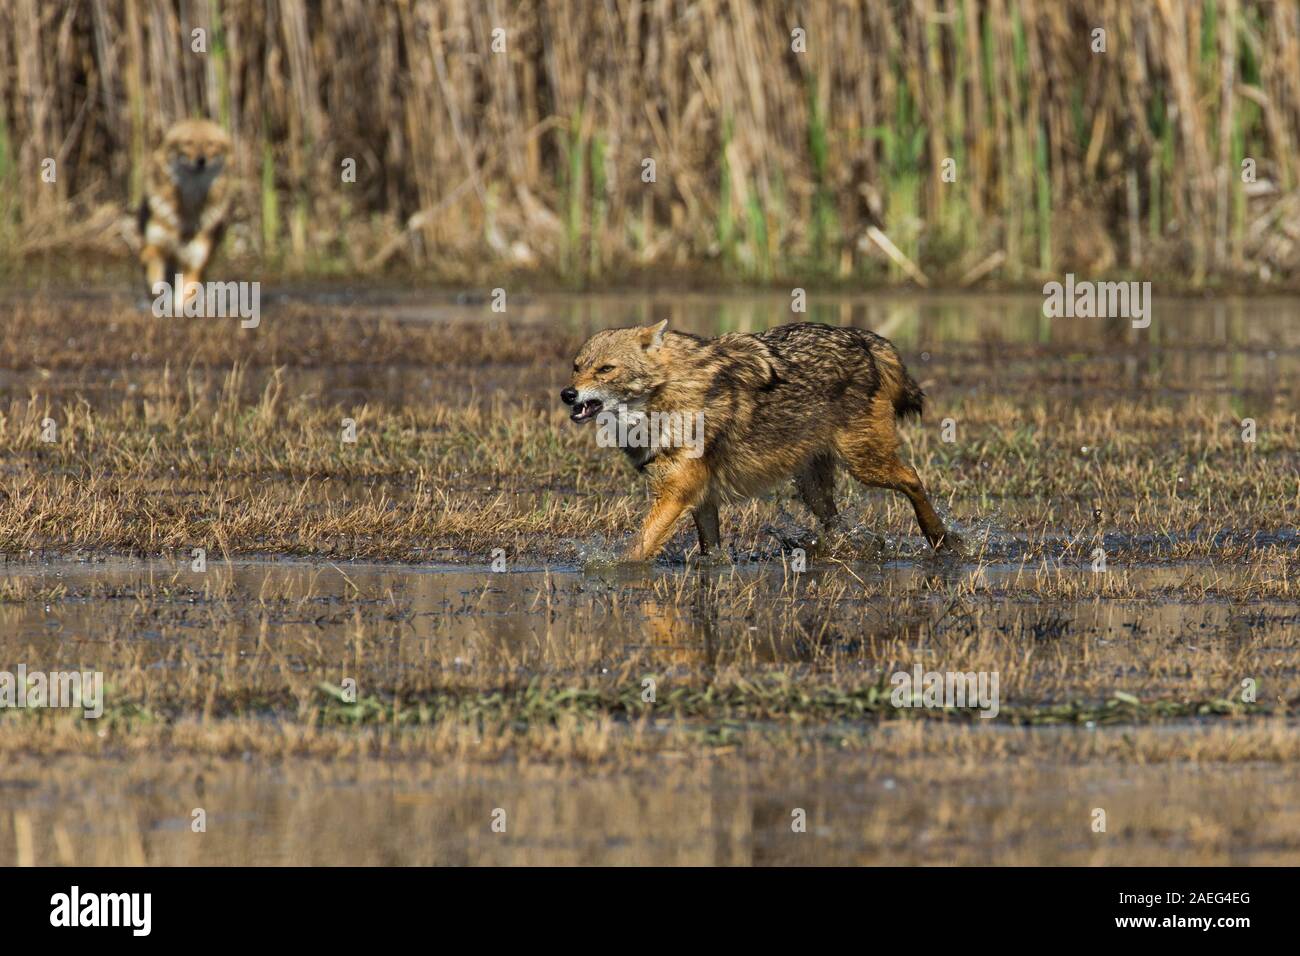 Le chacal doré (Canis aureus), également appelé l'asiatic, oriental ou chacal commun. Photographié en Israël Banque D'Images